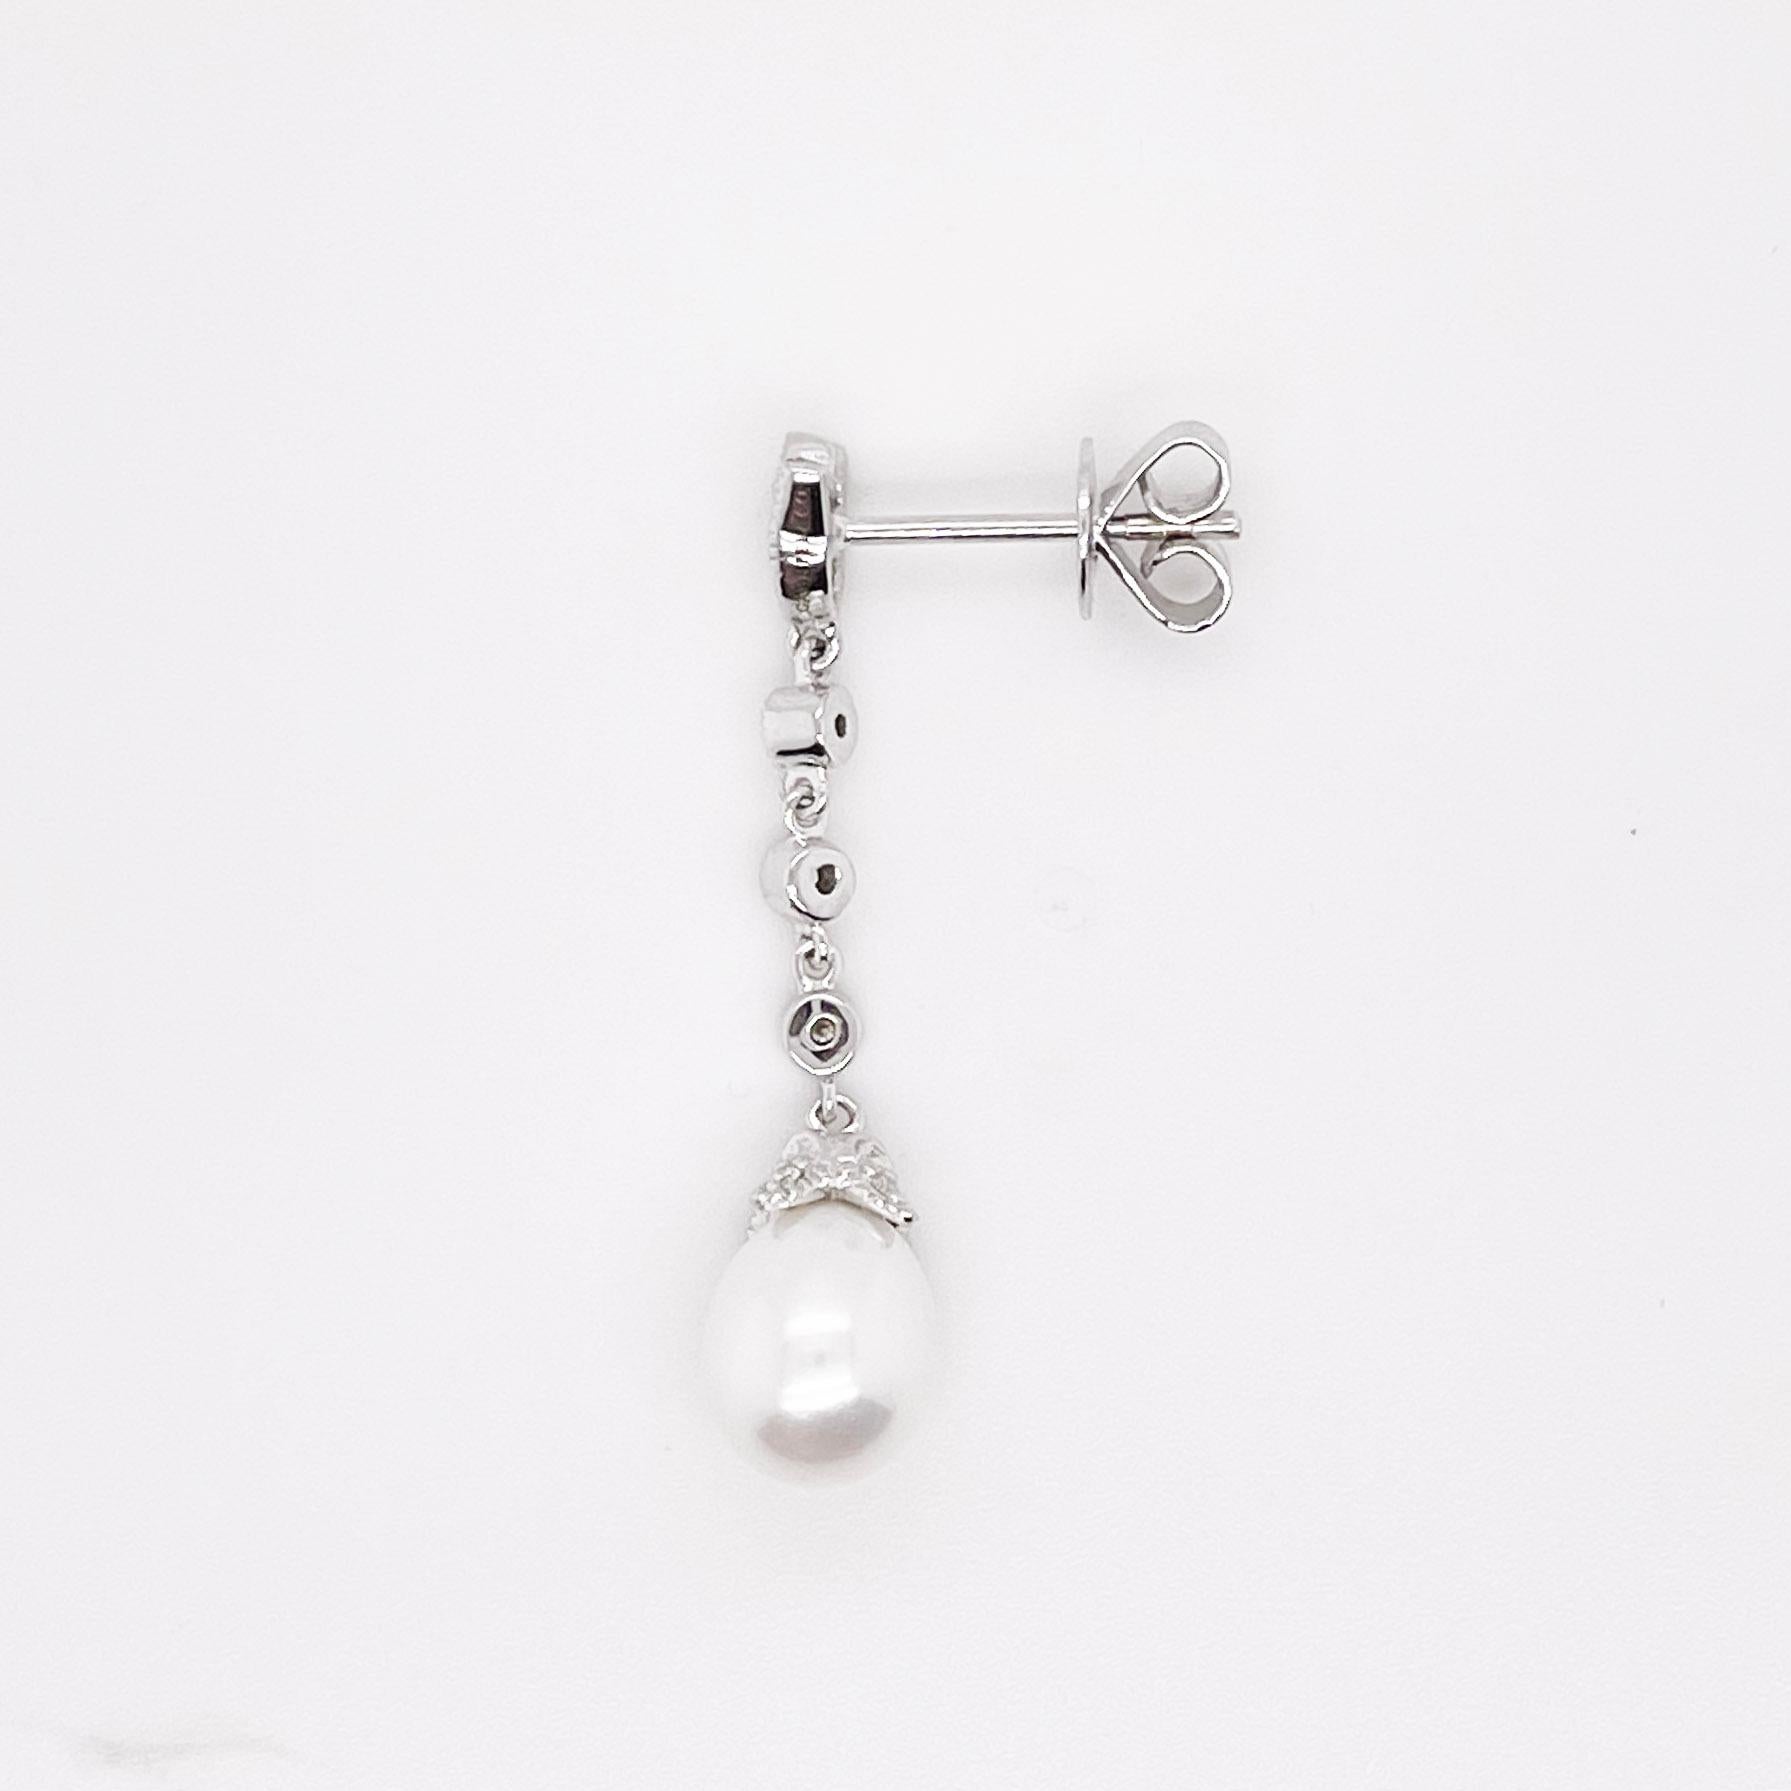 Diese atemberaubenden Perlenohrringe sind der perfekte Look für den Hochzeitstag oder für ein formelles Outfit! Die schlichte Eleganz der Diamanten und der Tropfenperle sind das perfekte Accessoire für den Hochzeitstag oder den eleganten Look!
Die